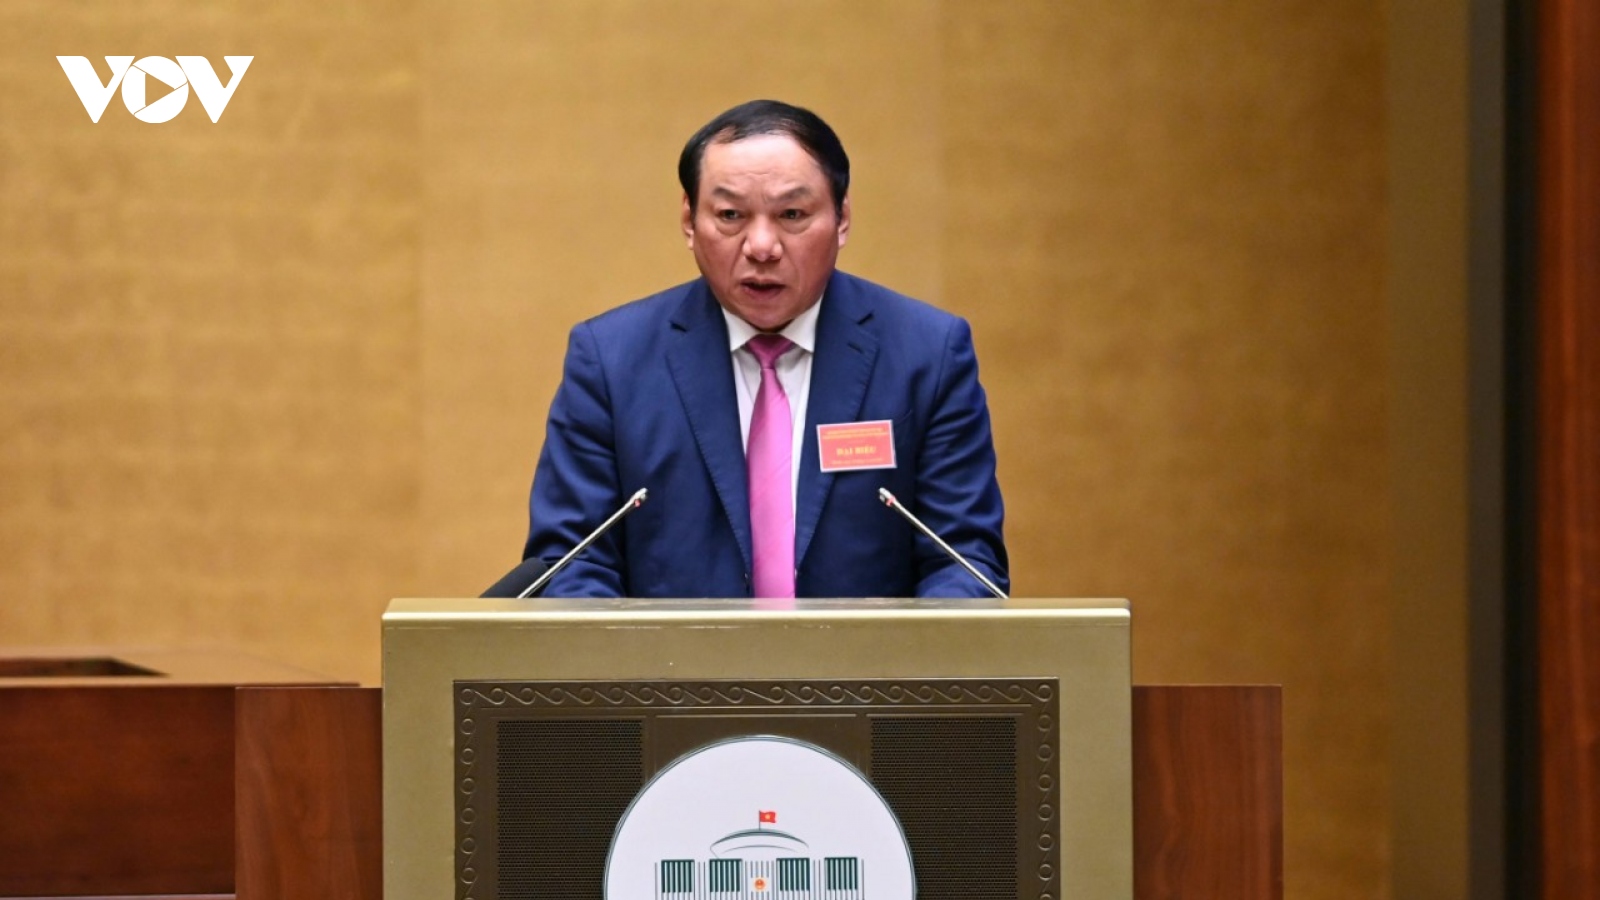 Bộ trưởng Nguyễn Văn Hùng: Văn hóa phải được đặt ngang hàng với kinh tế, chính trị